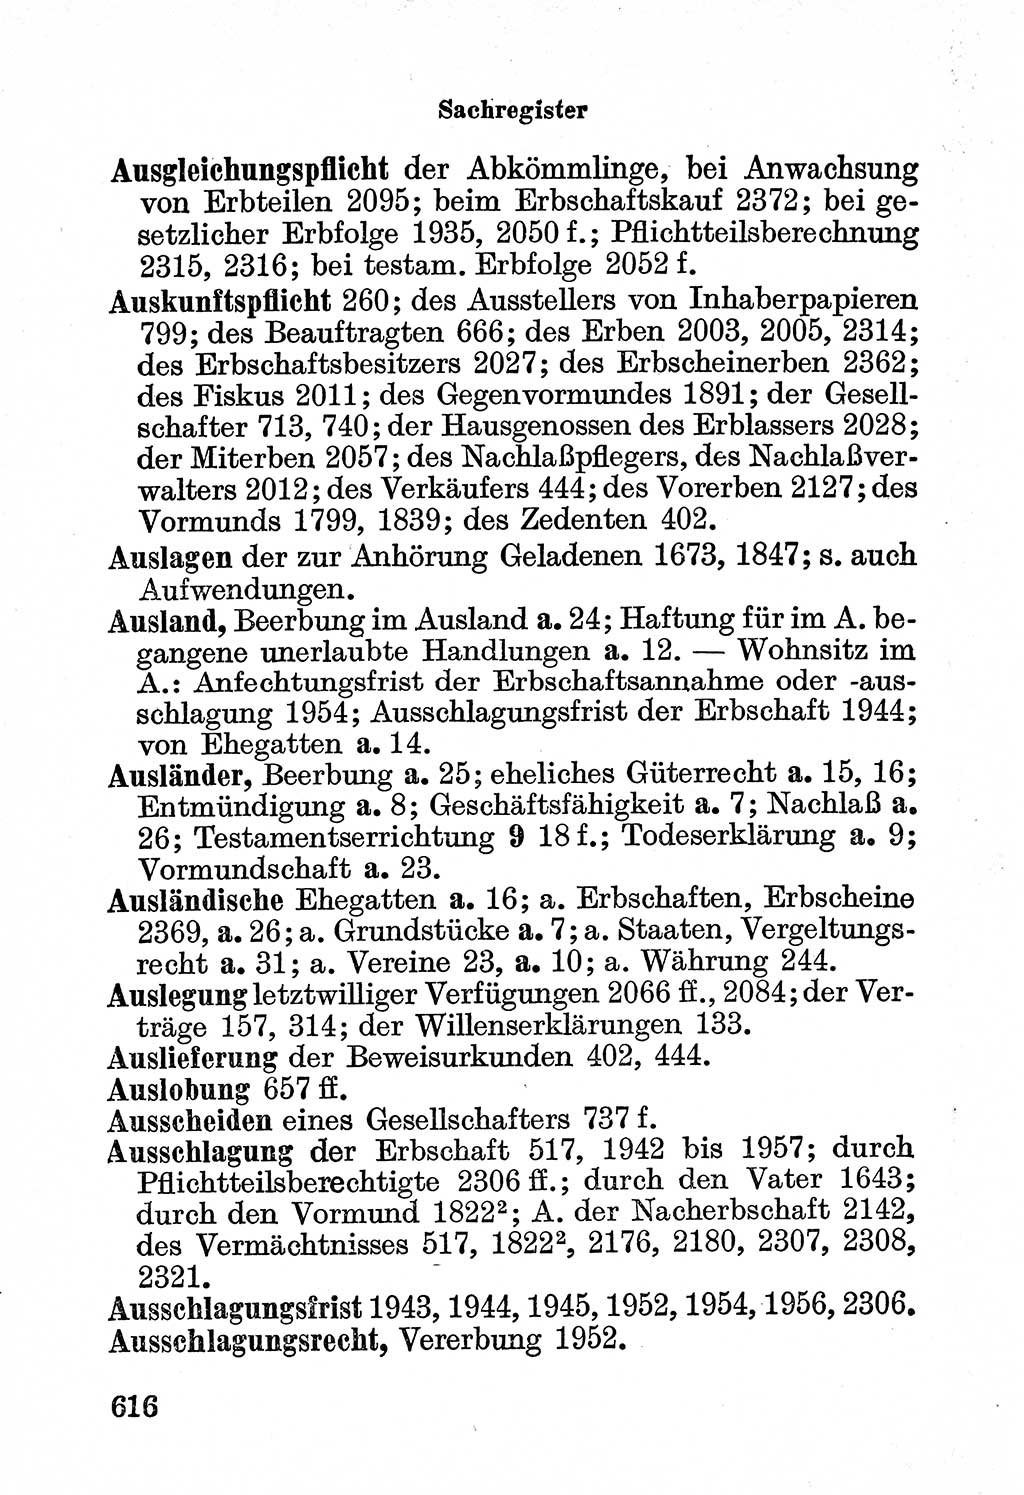 Bürgerliches Gesetzbuch (BGB) nebst wichtigen Nebengesetzen [Deutsche Demokratische Republik (DDR)] 1956, Seite 616 (BGB Nebenges. DDR 1956, S. 616)